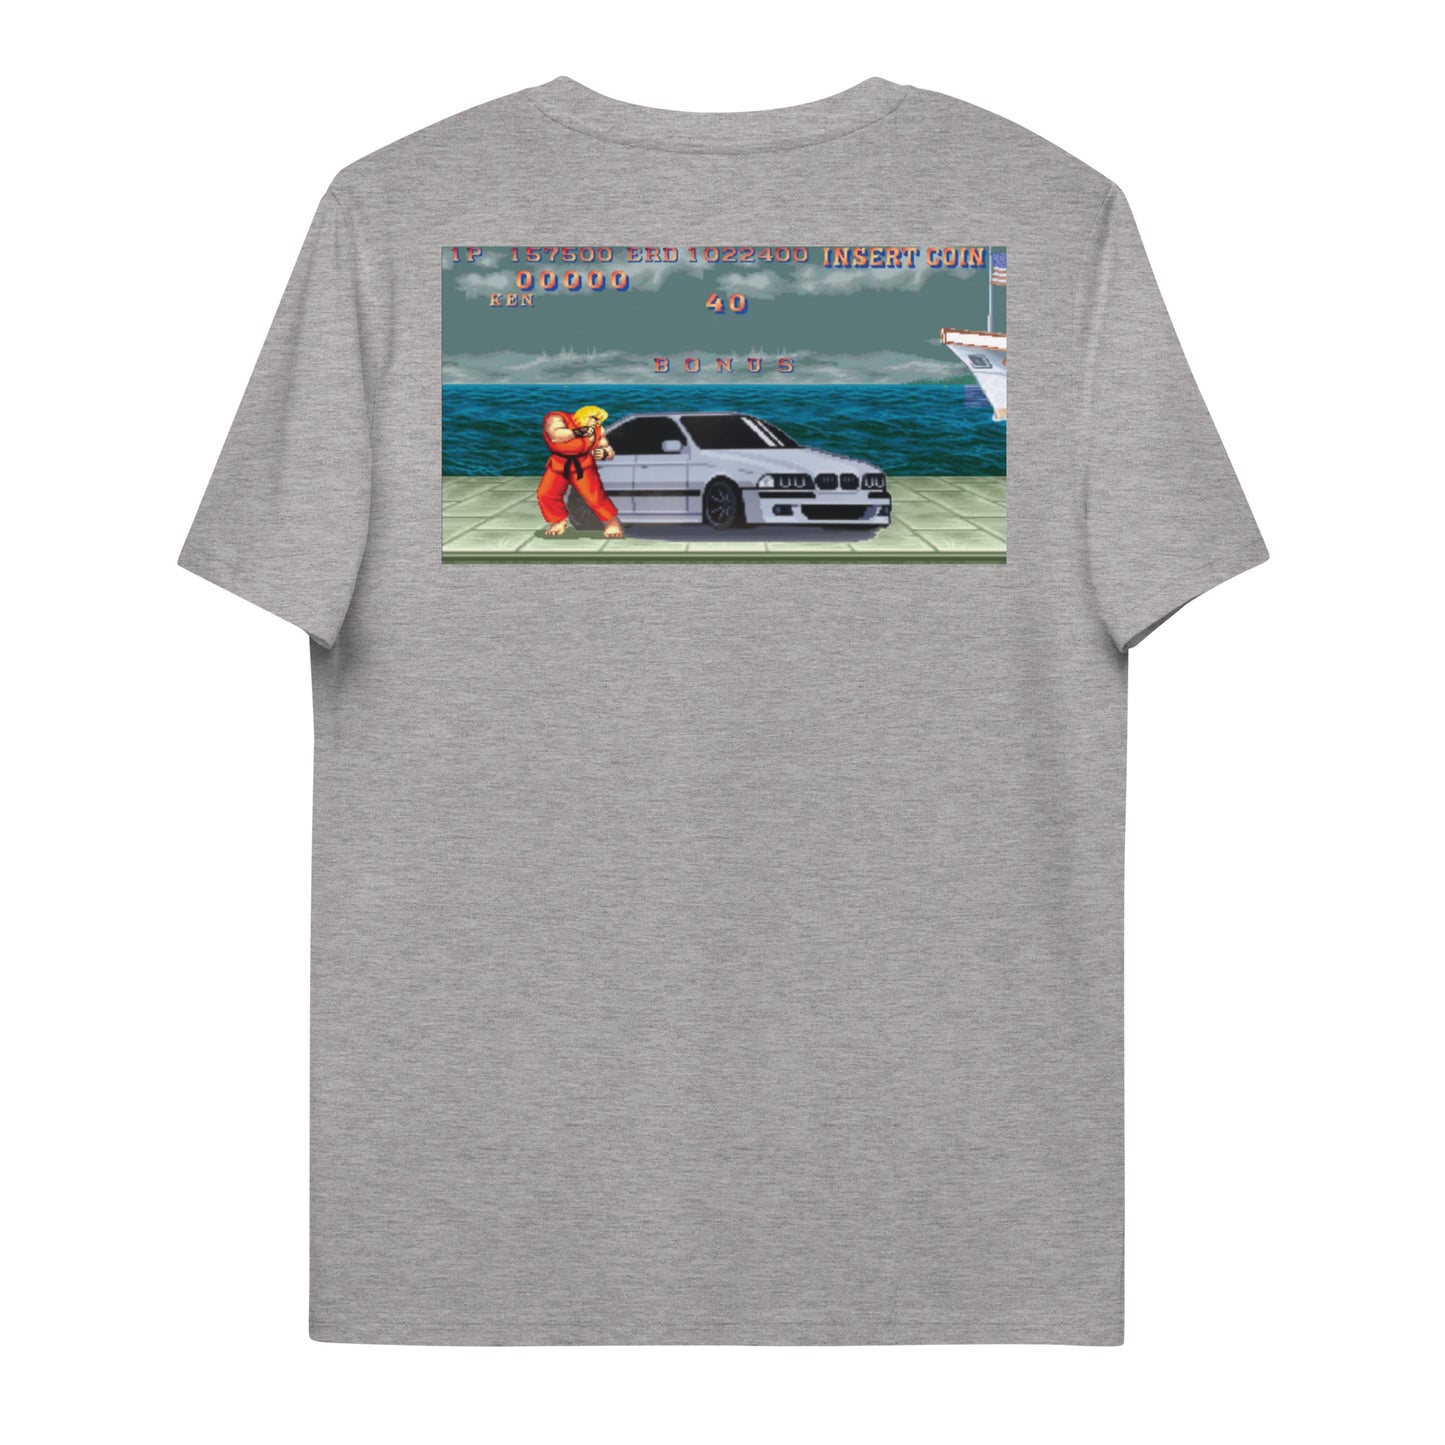 E39 Fighter t-shirt - moreraspeedshop jdm streetwear  